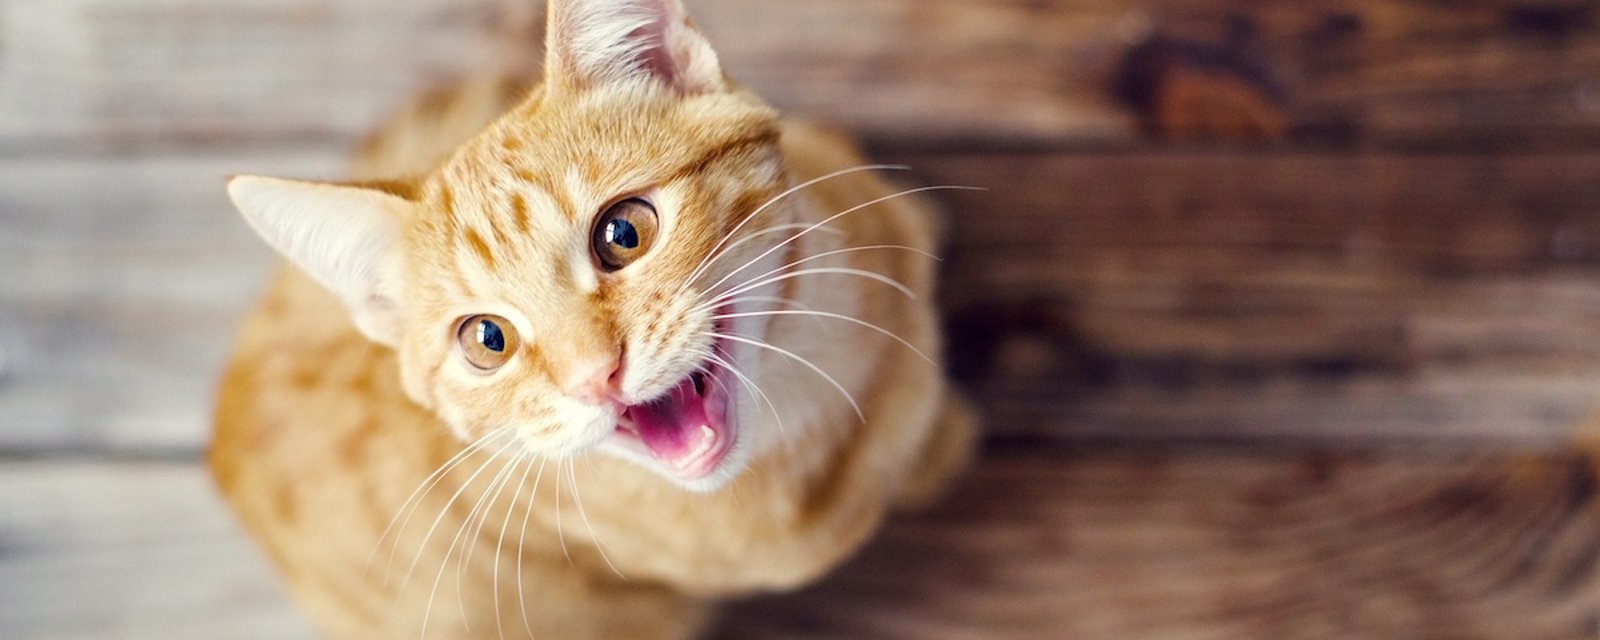 Votre chat miaule continuellement? Voici 12 explications possibles à ce comportement.